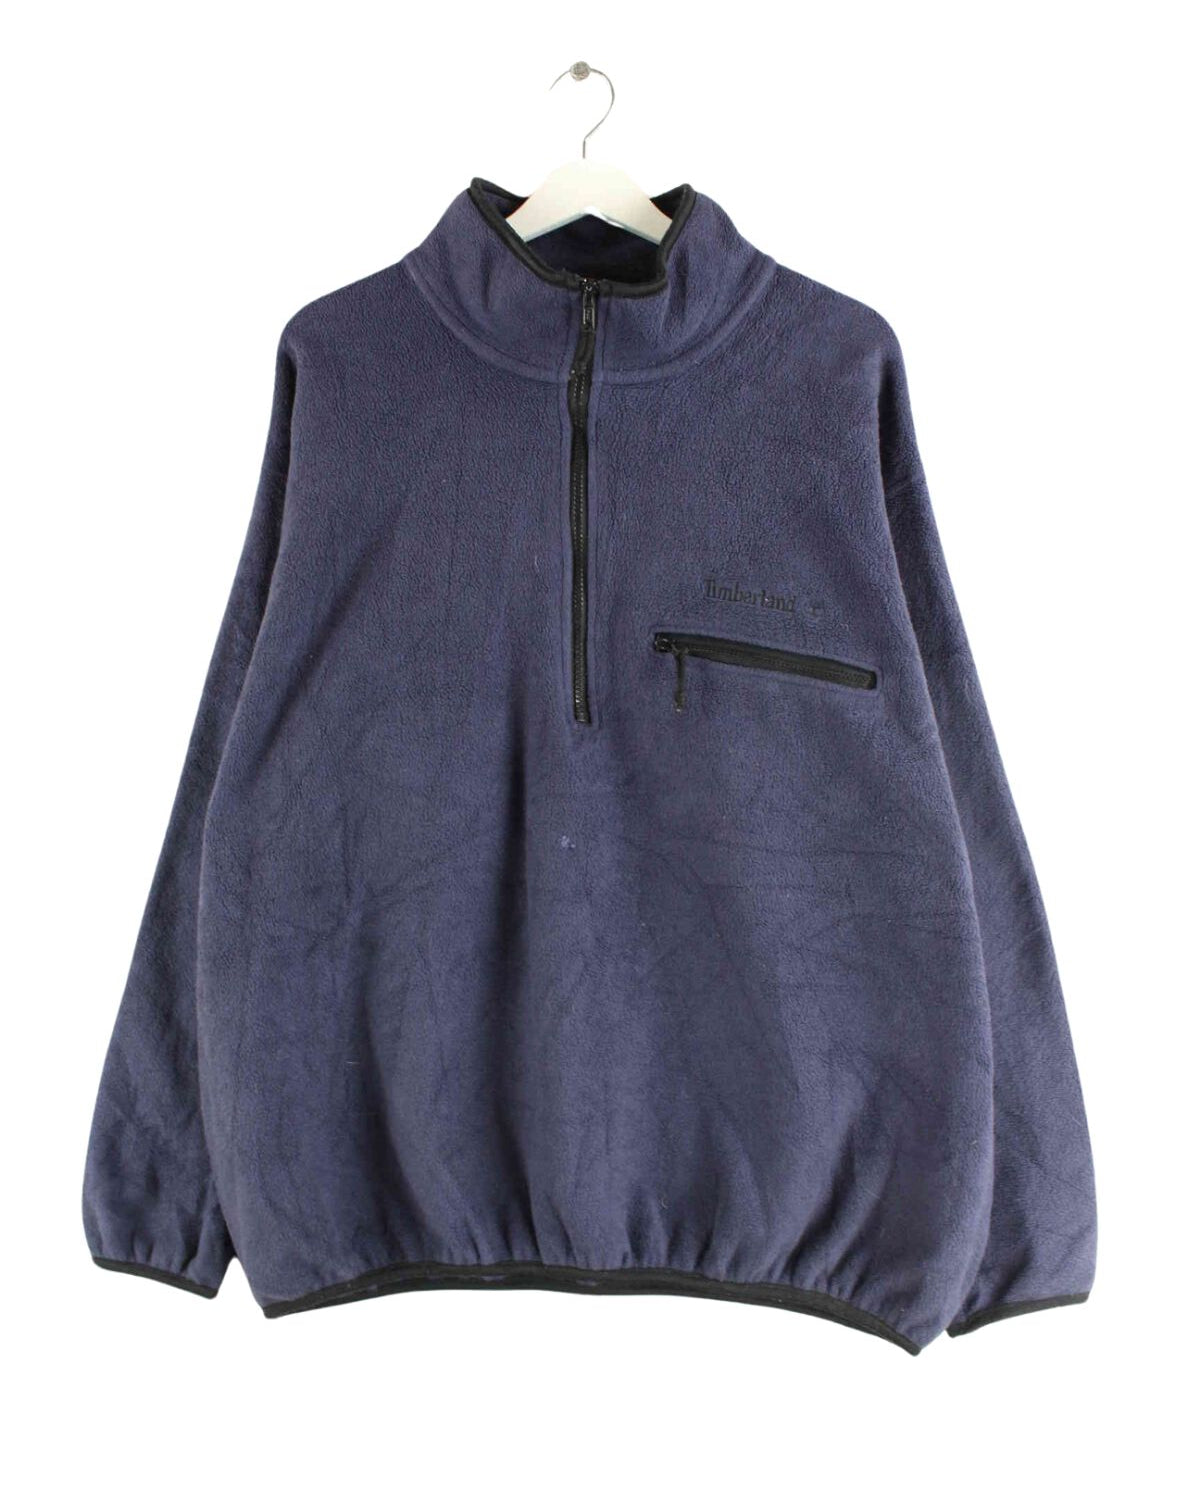 Timberland 90s Fleece Half Zip Sweater Blau L (front image)